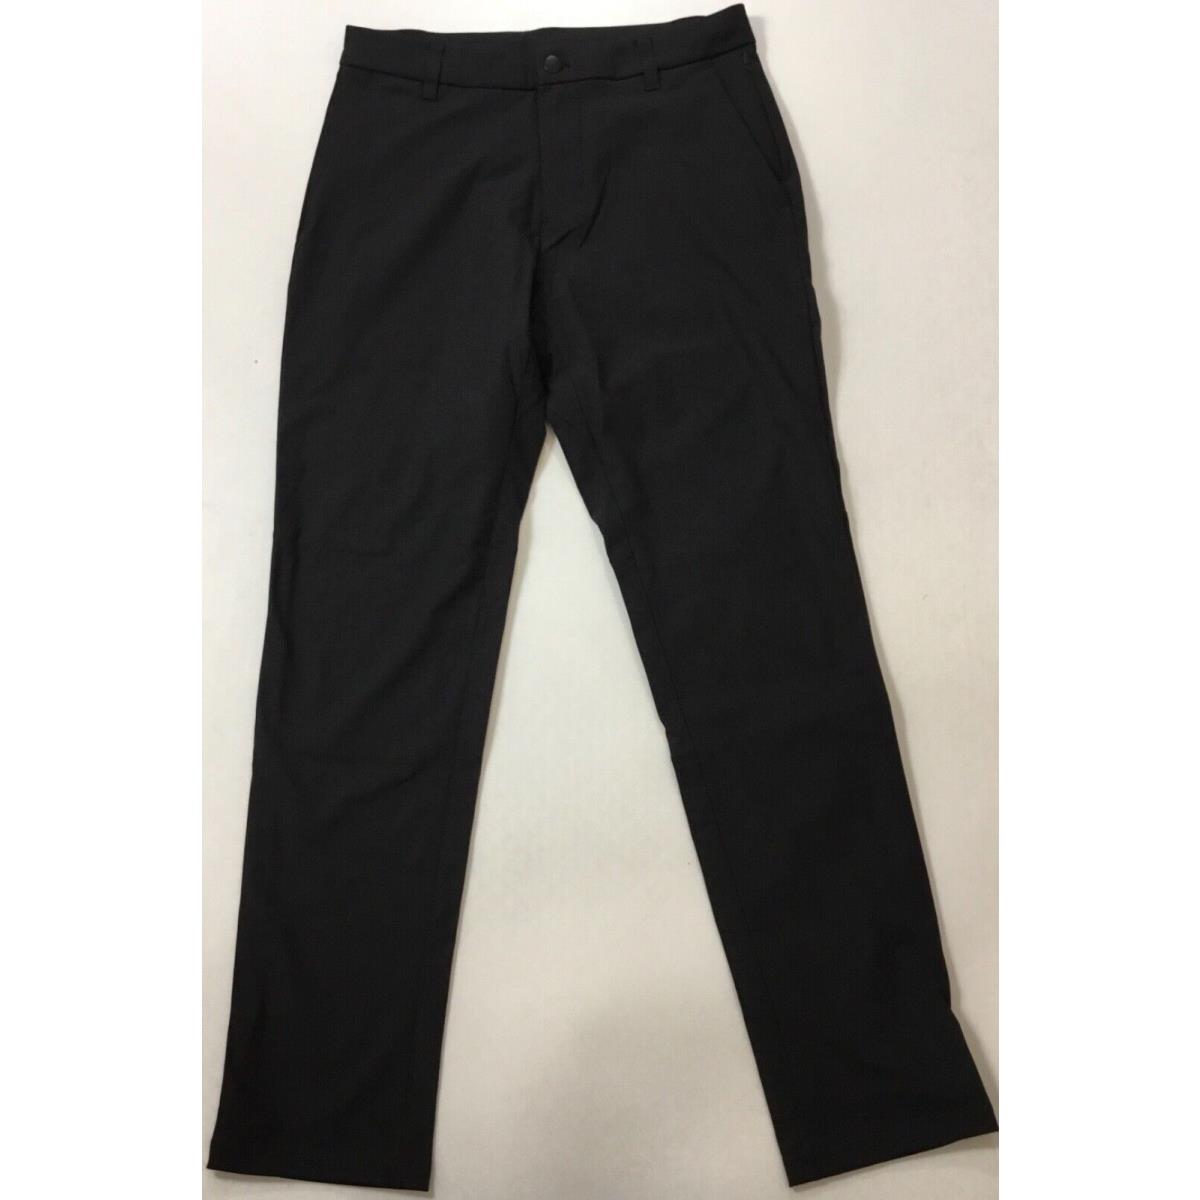 Lululemon Men Commission Pant Classic 32 L Short LM5985S Black Size 30